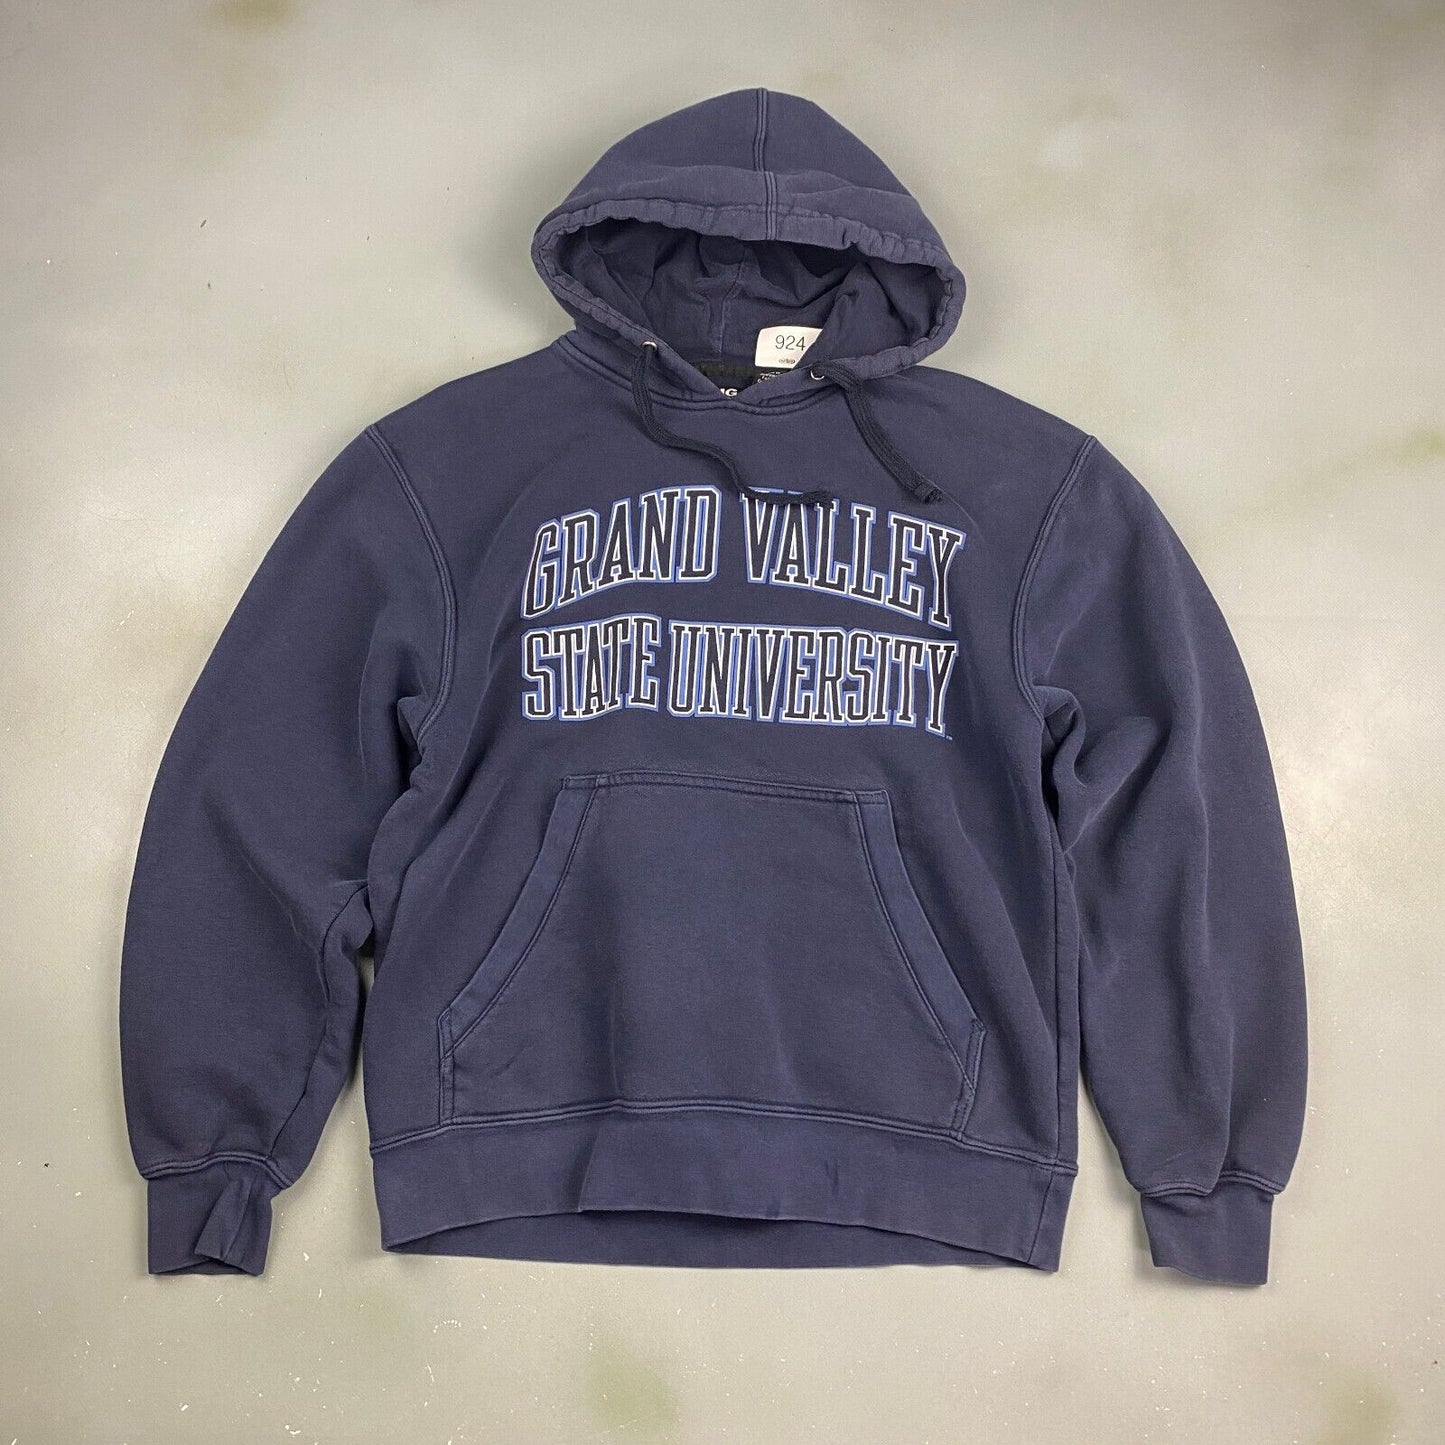 VINTAGE Grand Valley State University Hoodie Sweater sz Medium Men Adult